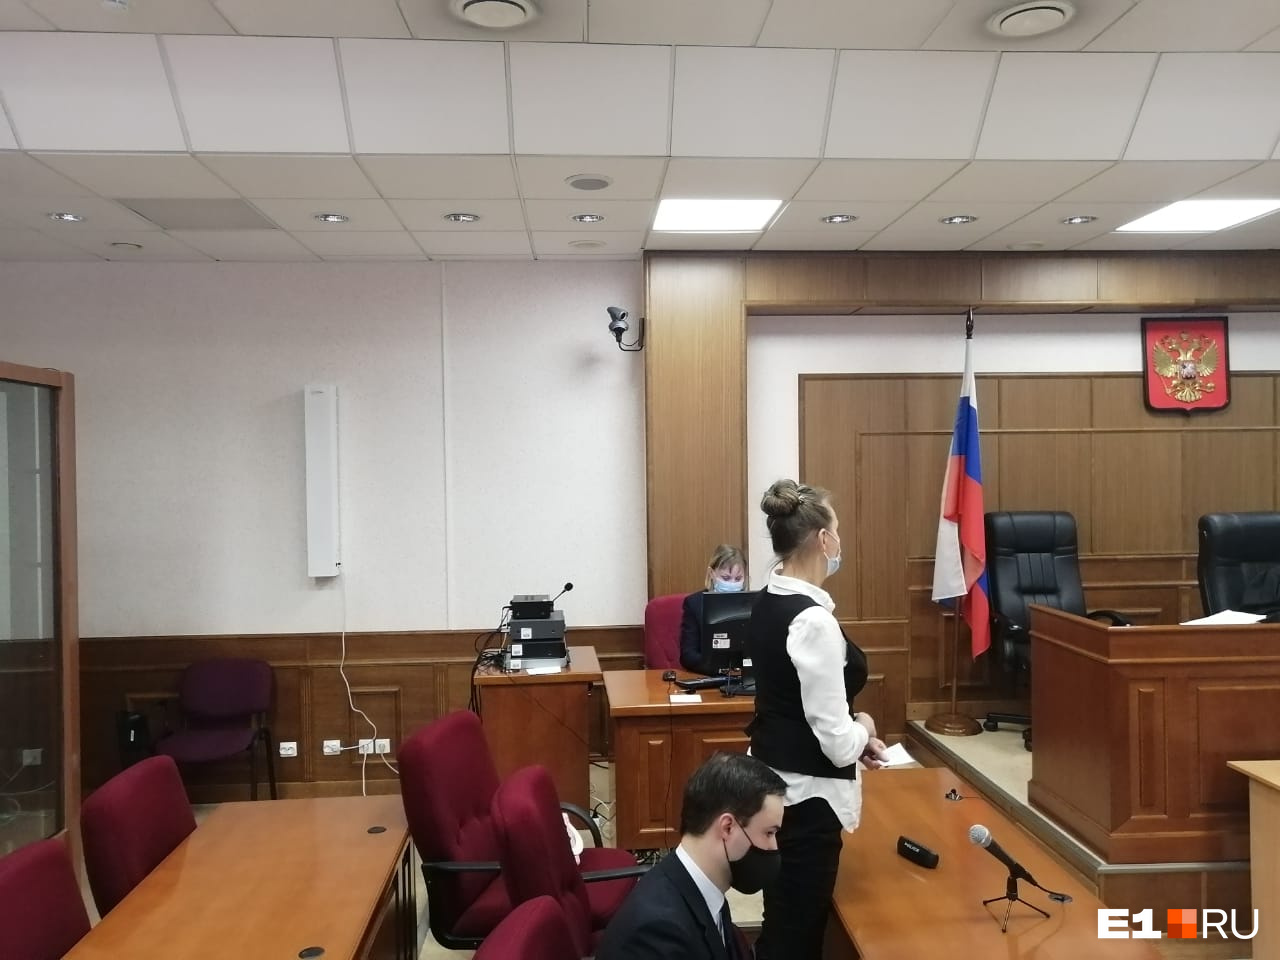 Светлана Рябова, мать убитой жены фотографа, выступает в суде